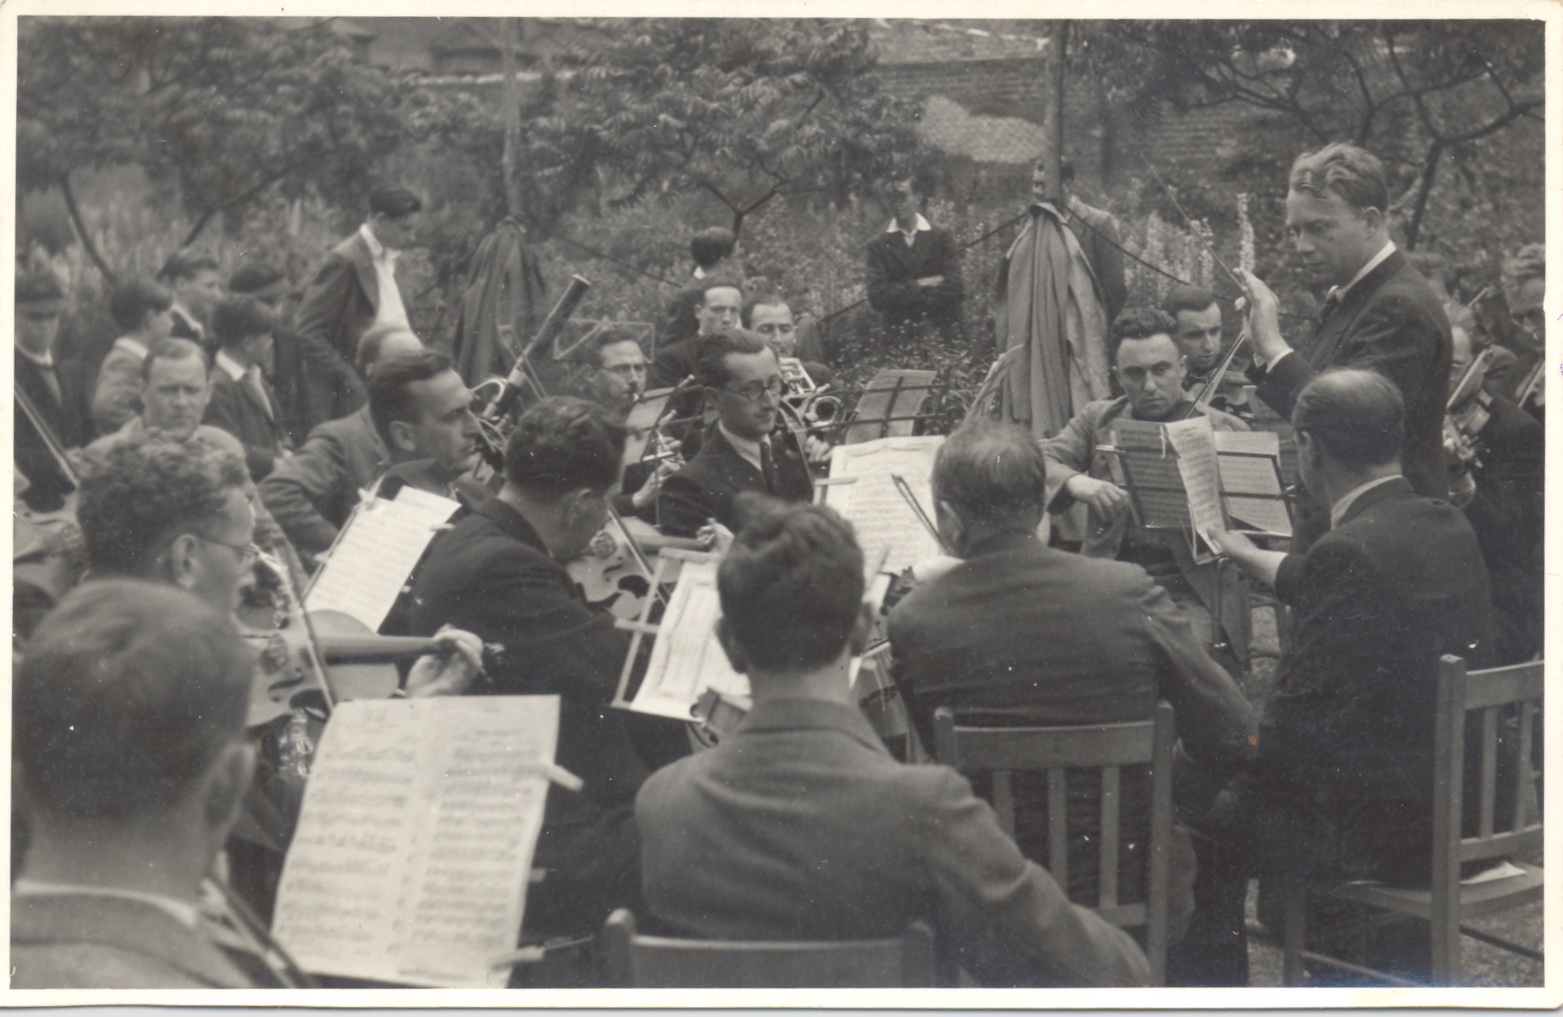 Kitchener camp, Richborough, Franz Schanzer, Orchestra